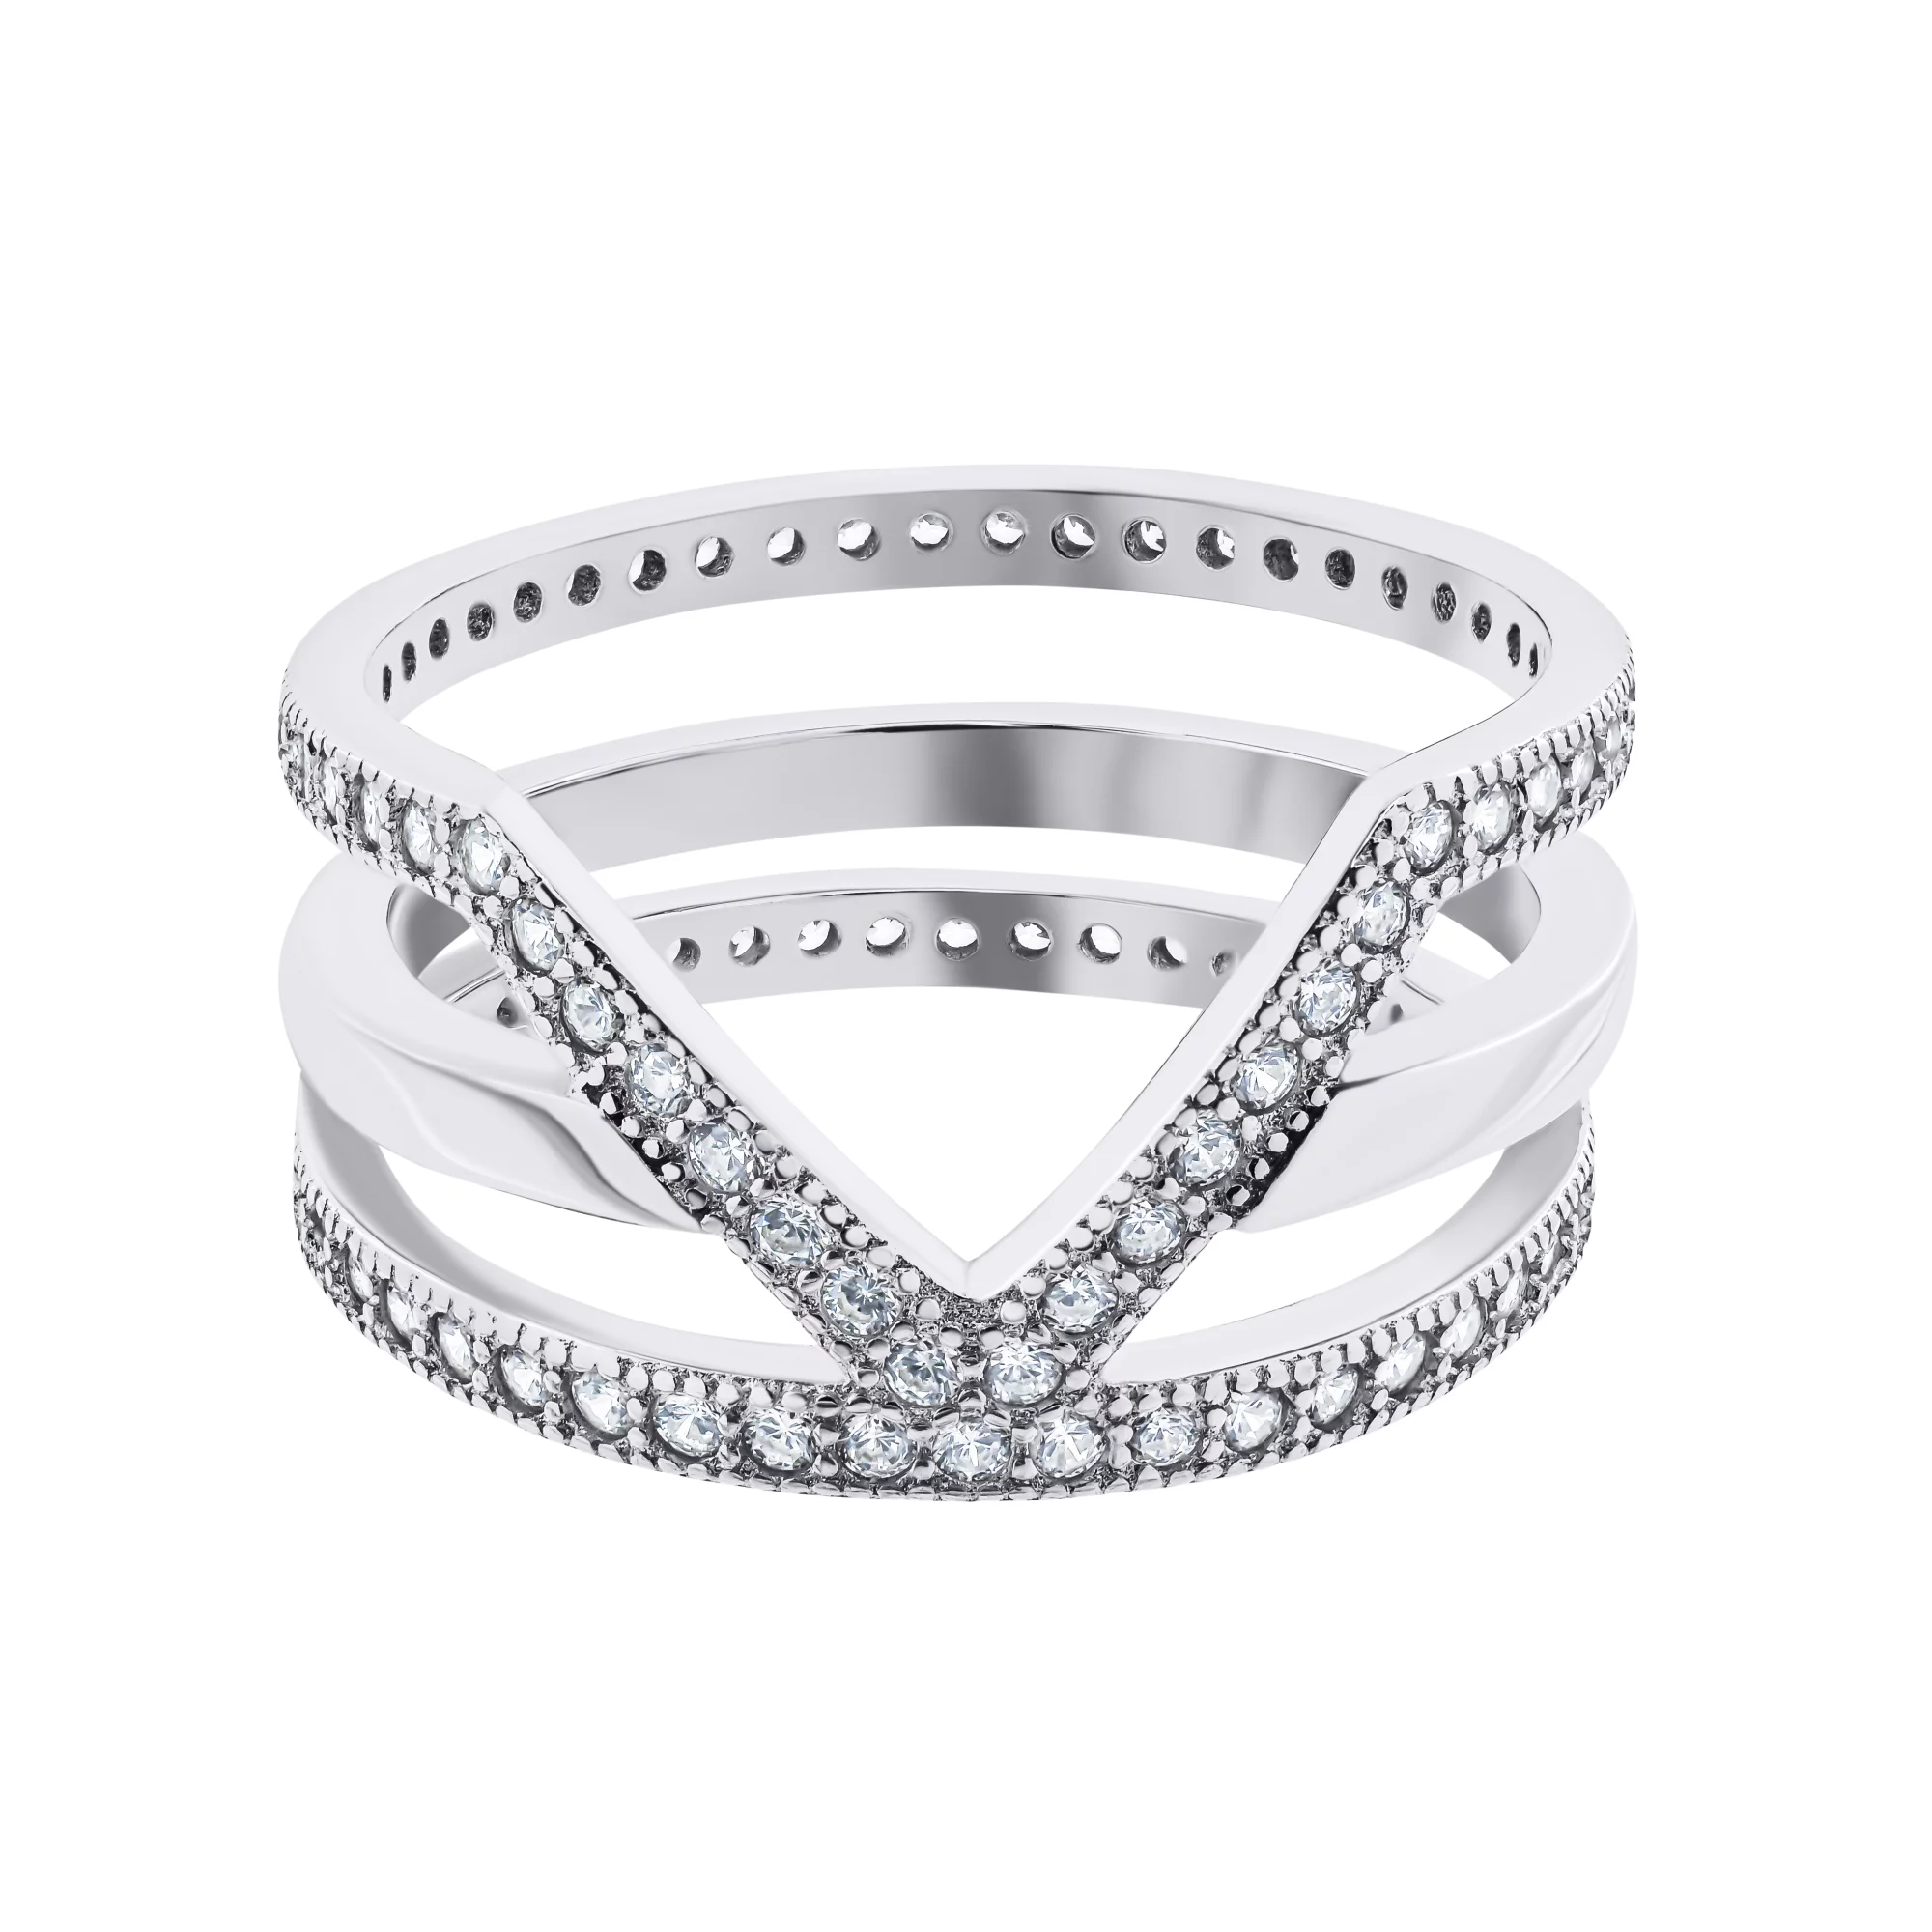 Фаланговое тройное серебряное кольцо с дорожками фианитов - 1528865 – изображение 2